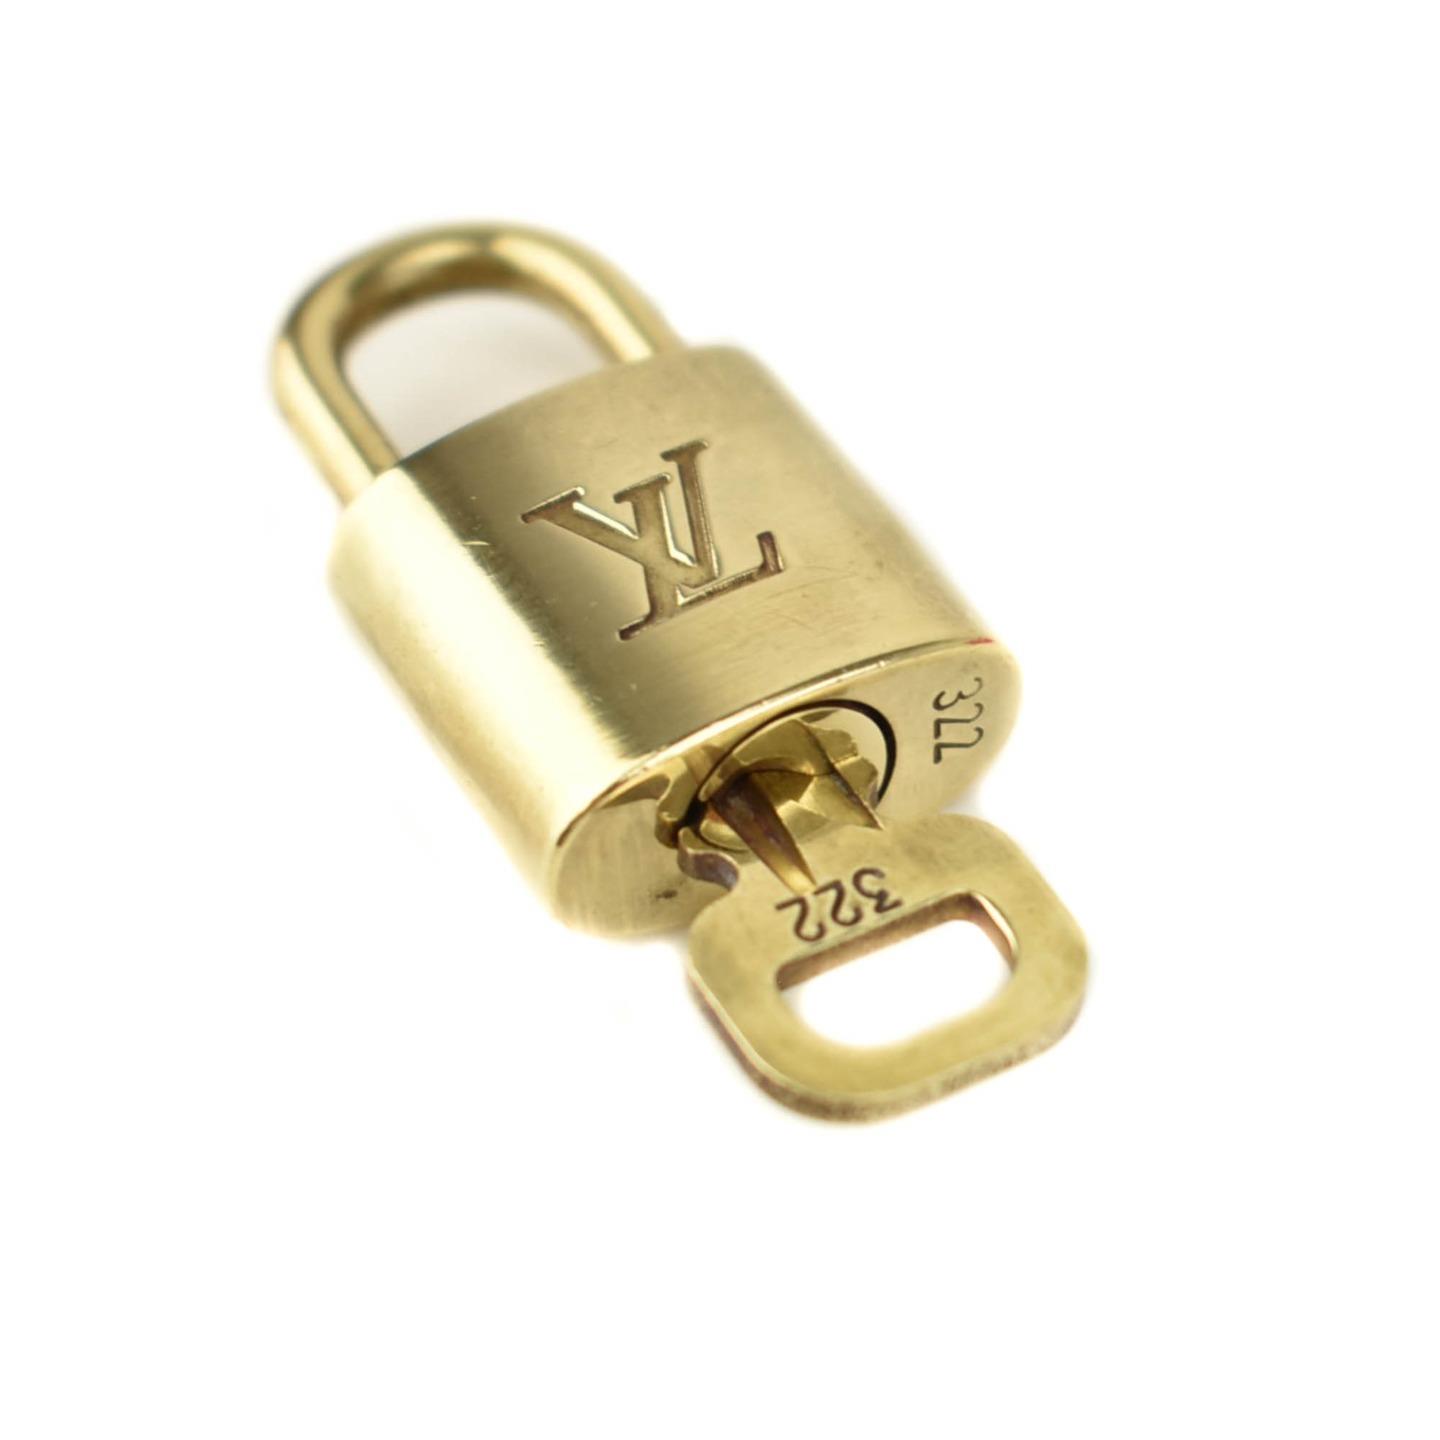 LOUIS VUITTON: Gold/Brass, Metal Padlock & Key Set #322 (nw) | eBay